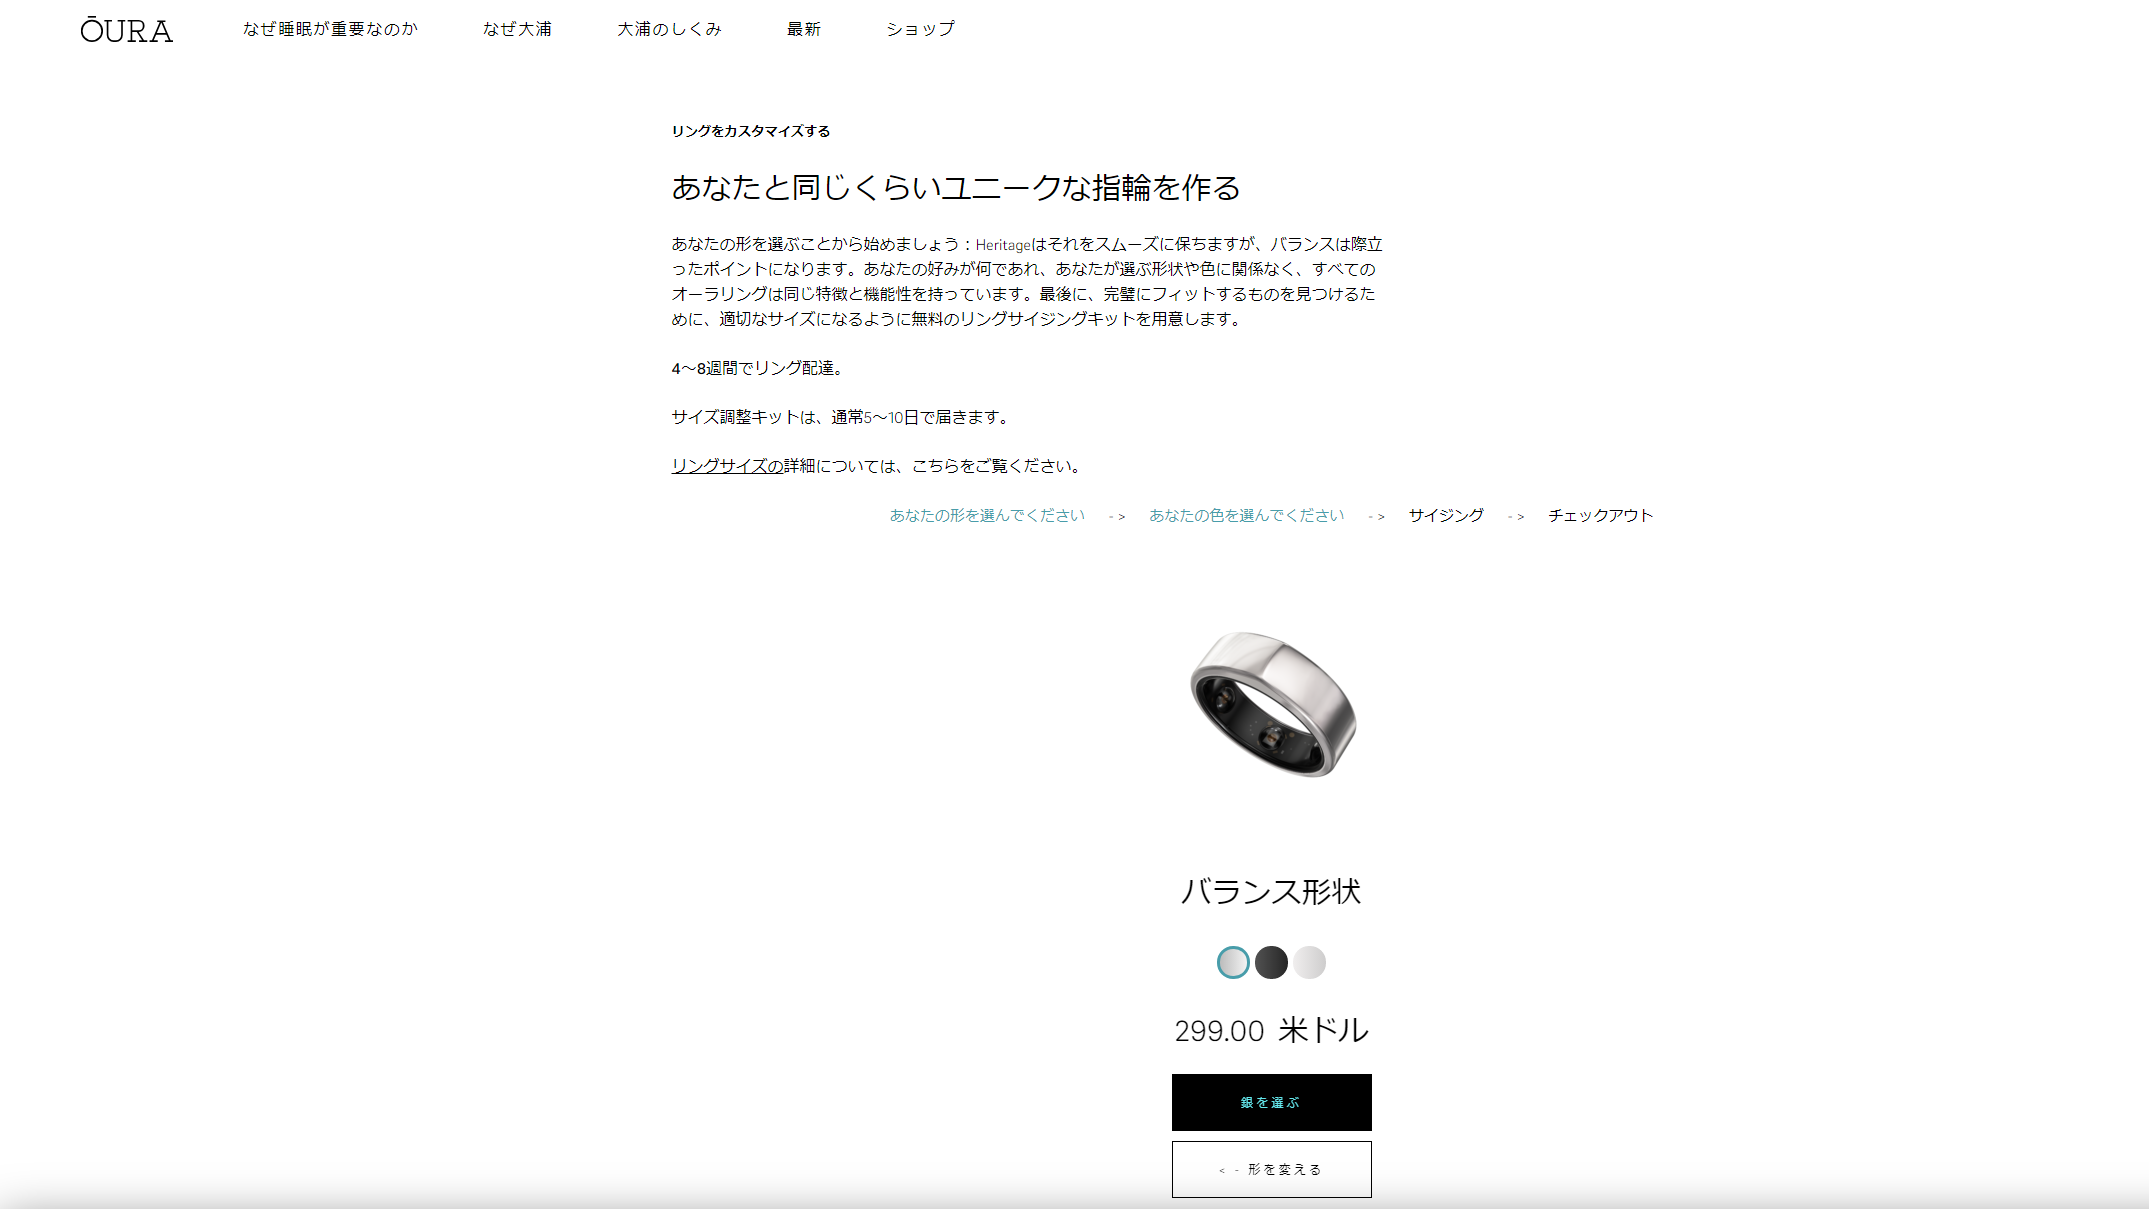 Ouraring オーラリング 日本で購入 公式サイトで安くなる買い方はこちら のーとぶっく らいふはっく